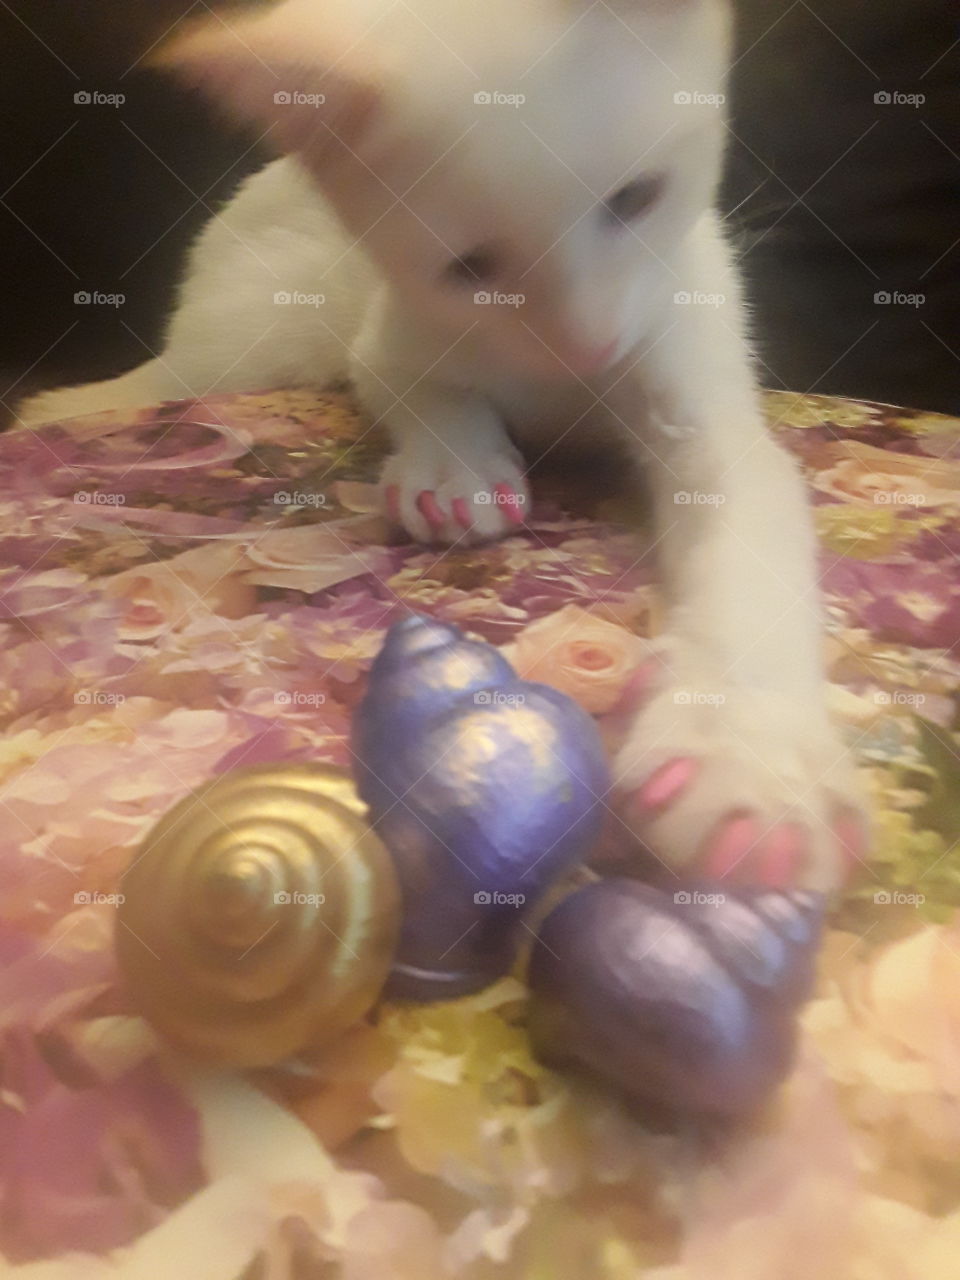 stolen seashells by zilla the kitten